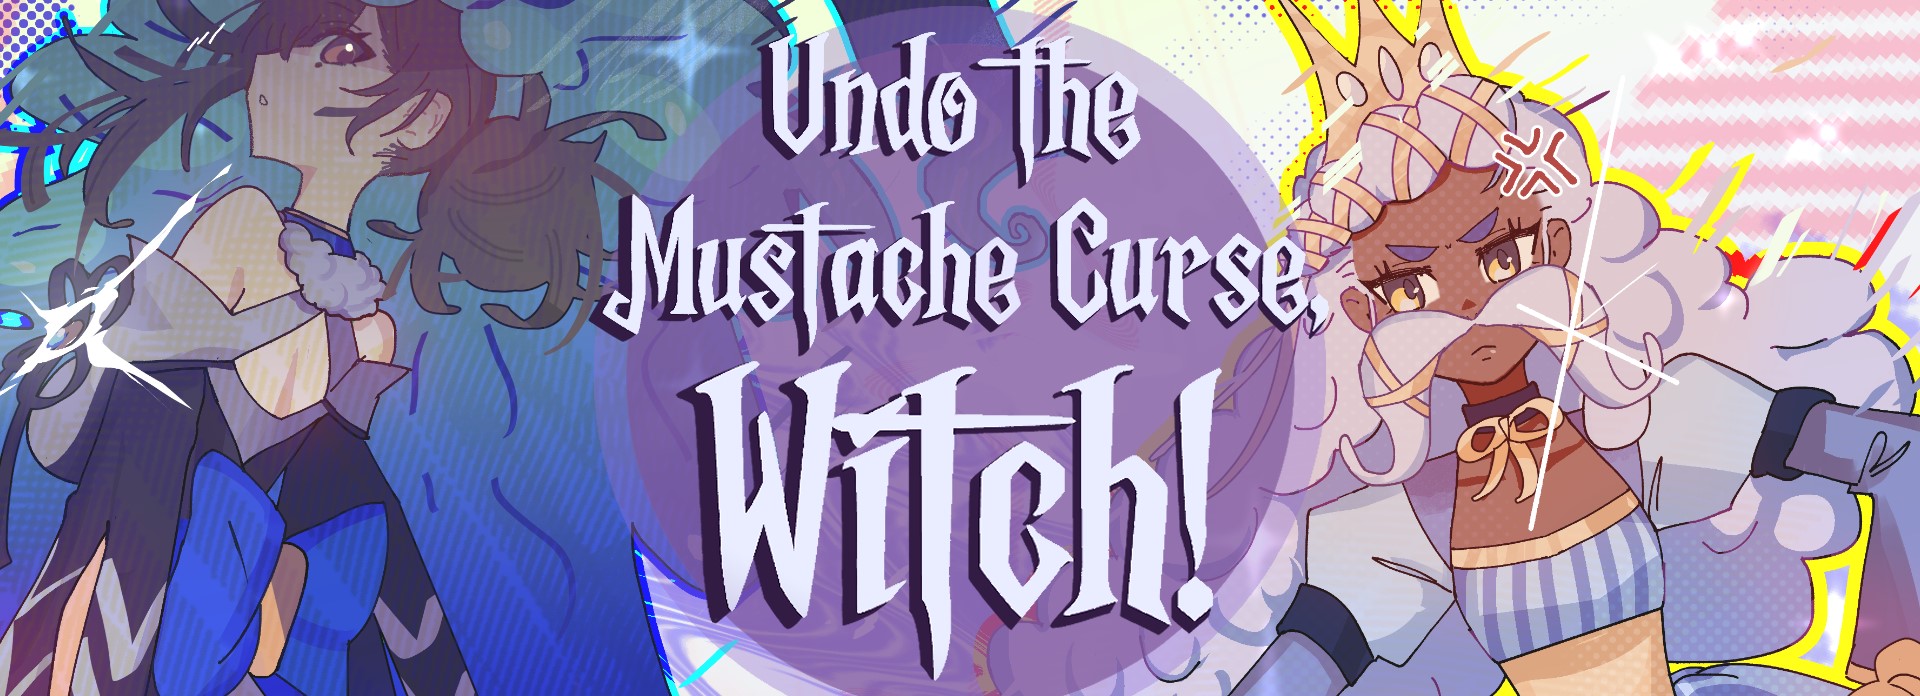 Undo the Mustache Curse, Witch!